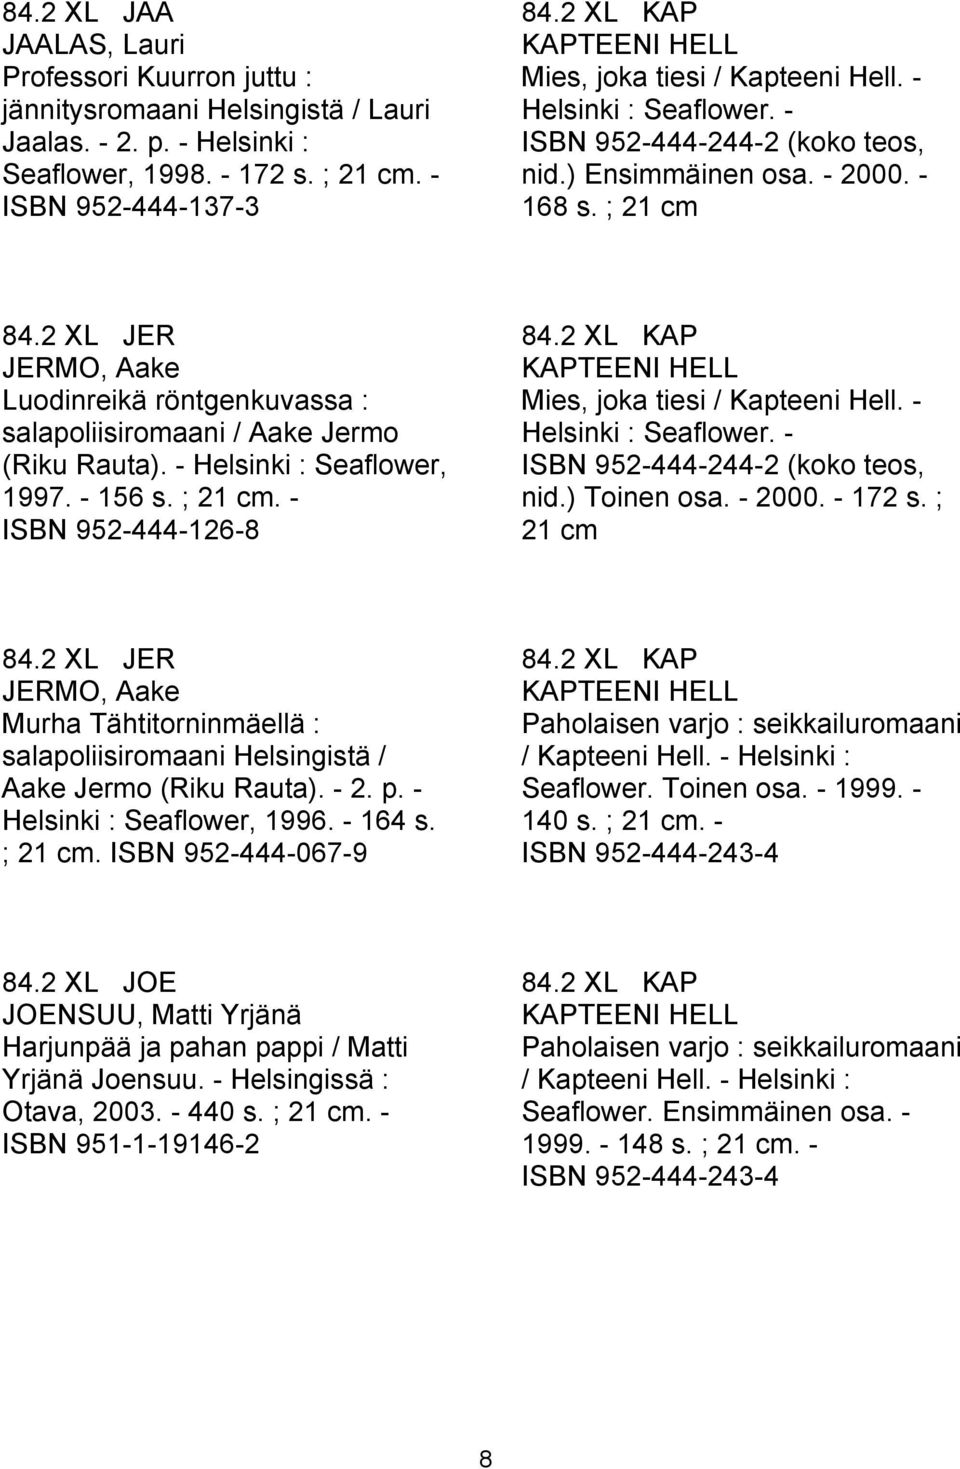 2 XL JER JERMO, Aake Luodinreikä röntgenkuvassa : salapoliisiromaani / Aake Jermo (Riku Rauta). - Helsinki : Seaflower, 1997. - 156 s. ; 21 cm. - ISBN 952-444-126-8 84.